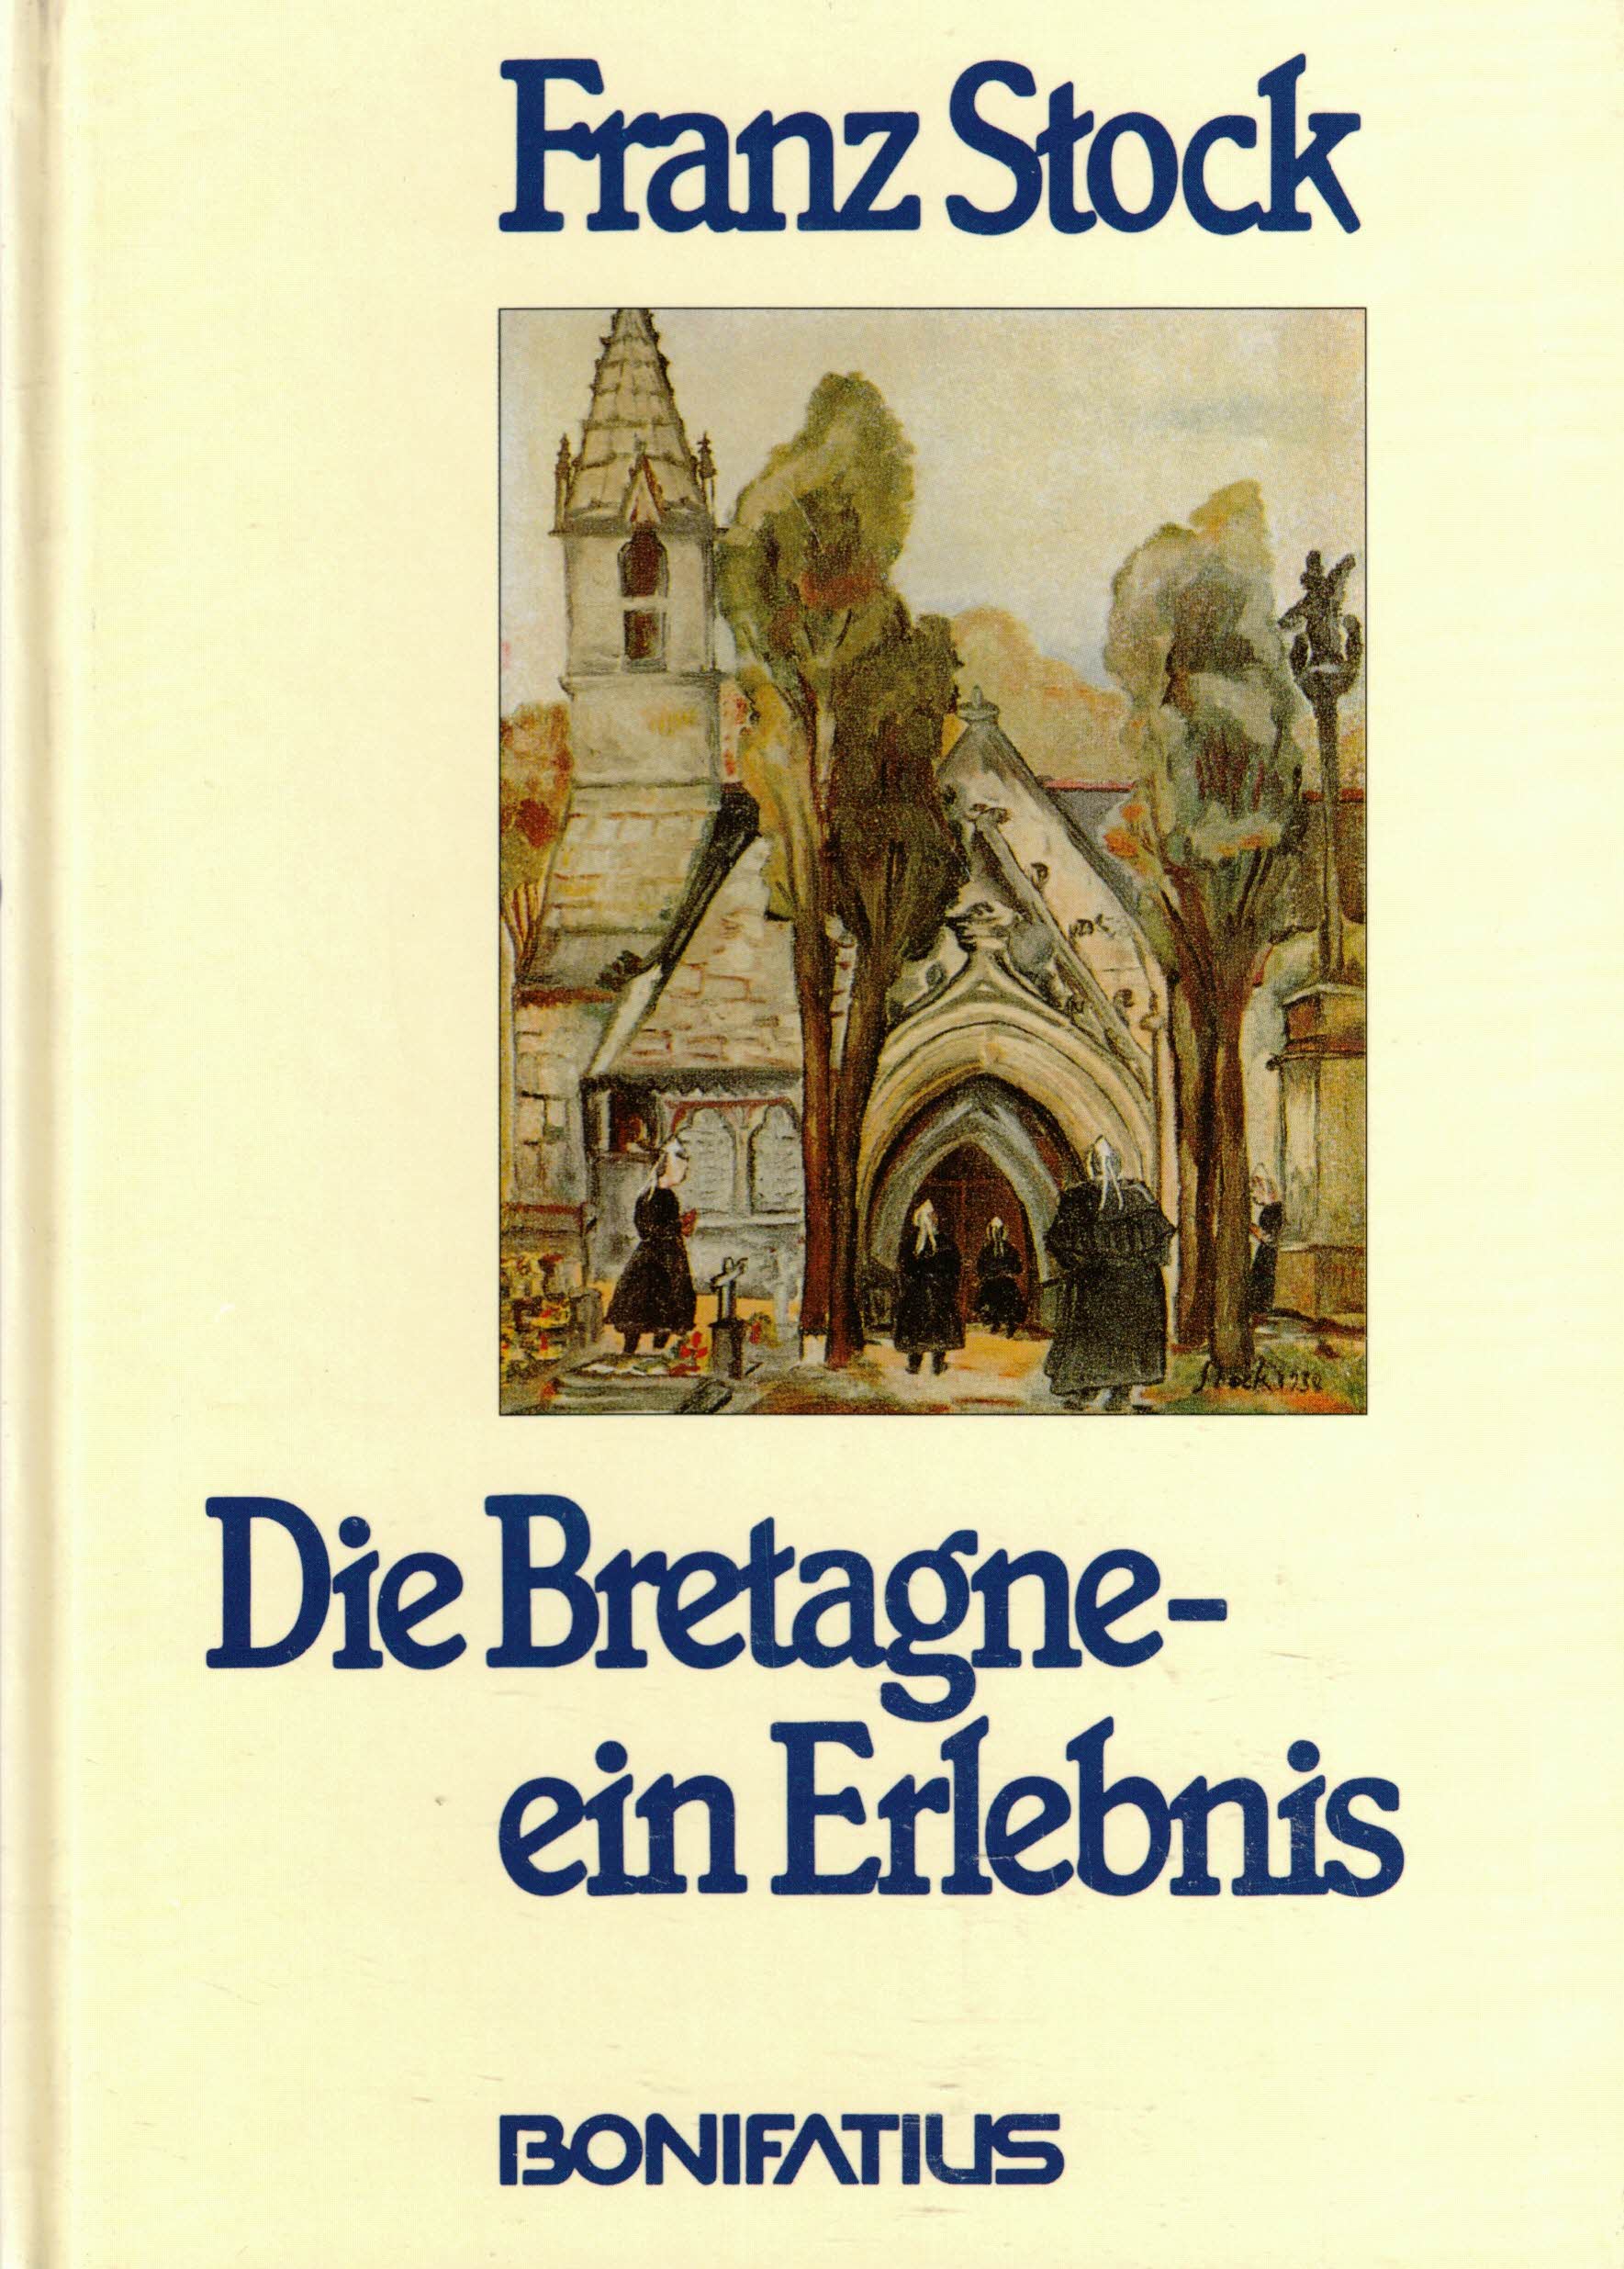 Die Bretagne ein Erlebnis. Nachdruck der Ausgabe Colmar 1943 - Stock, Franz